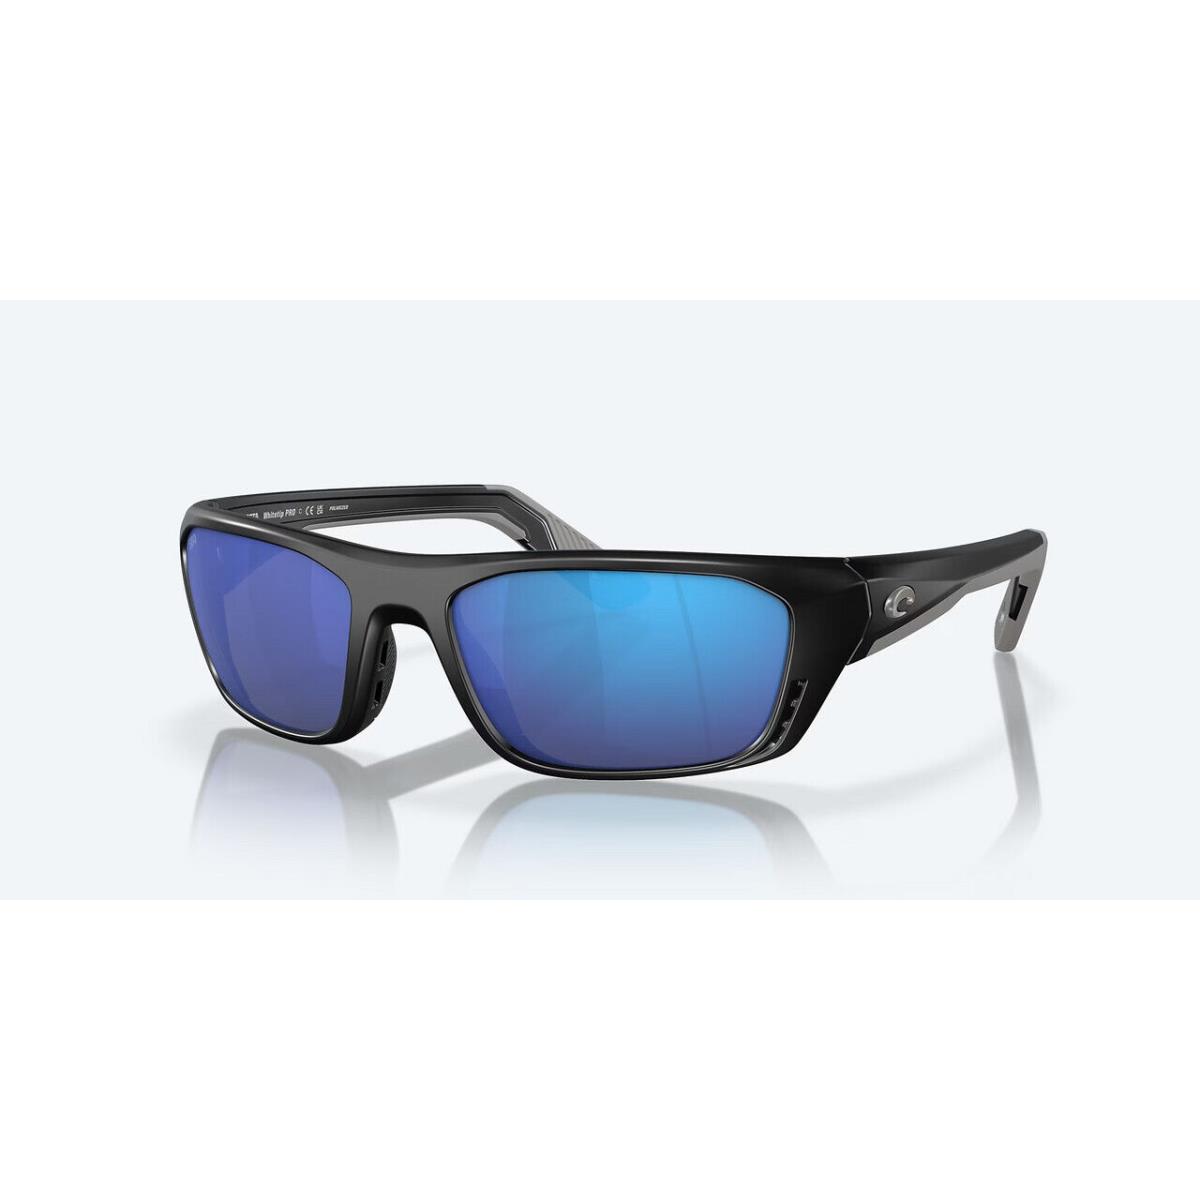 Costa Whitetip Sunglasses - Polarized - Matte Black W/blue Mirror 580G - Frame: Matte Black, Lens: Blue